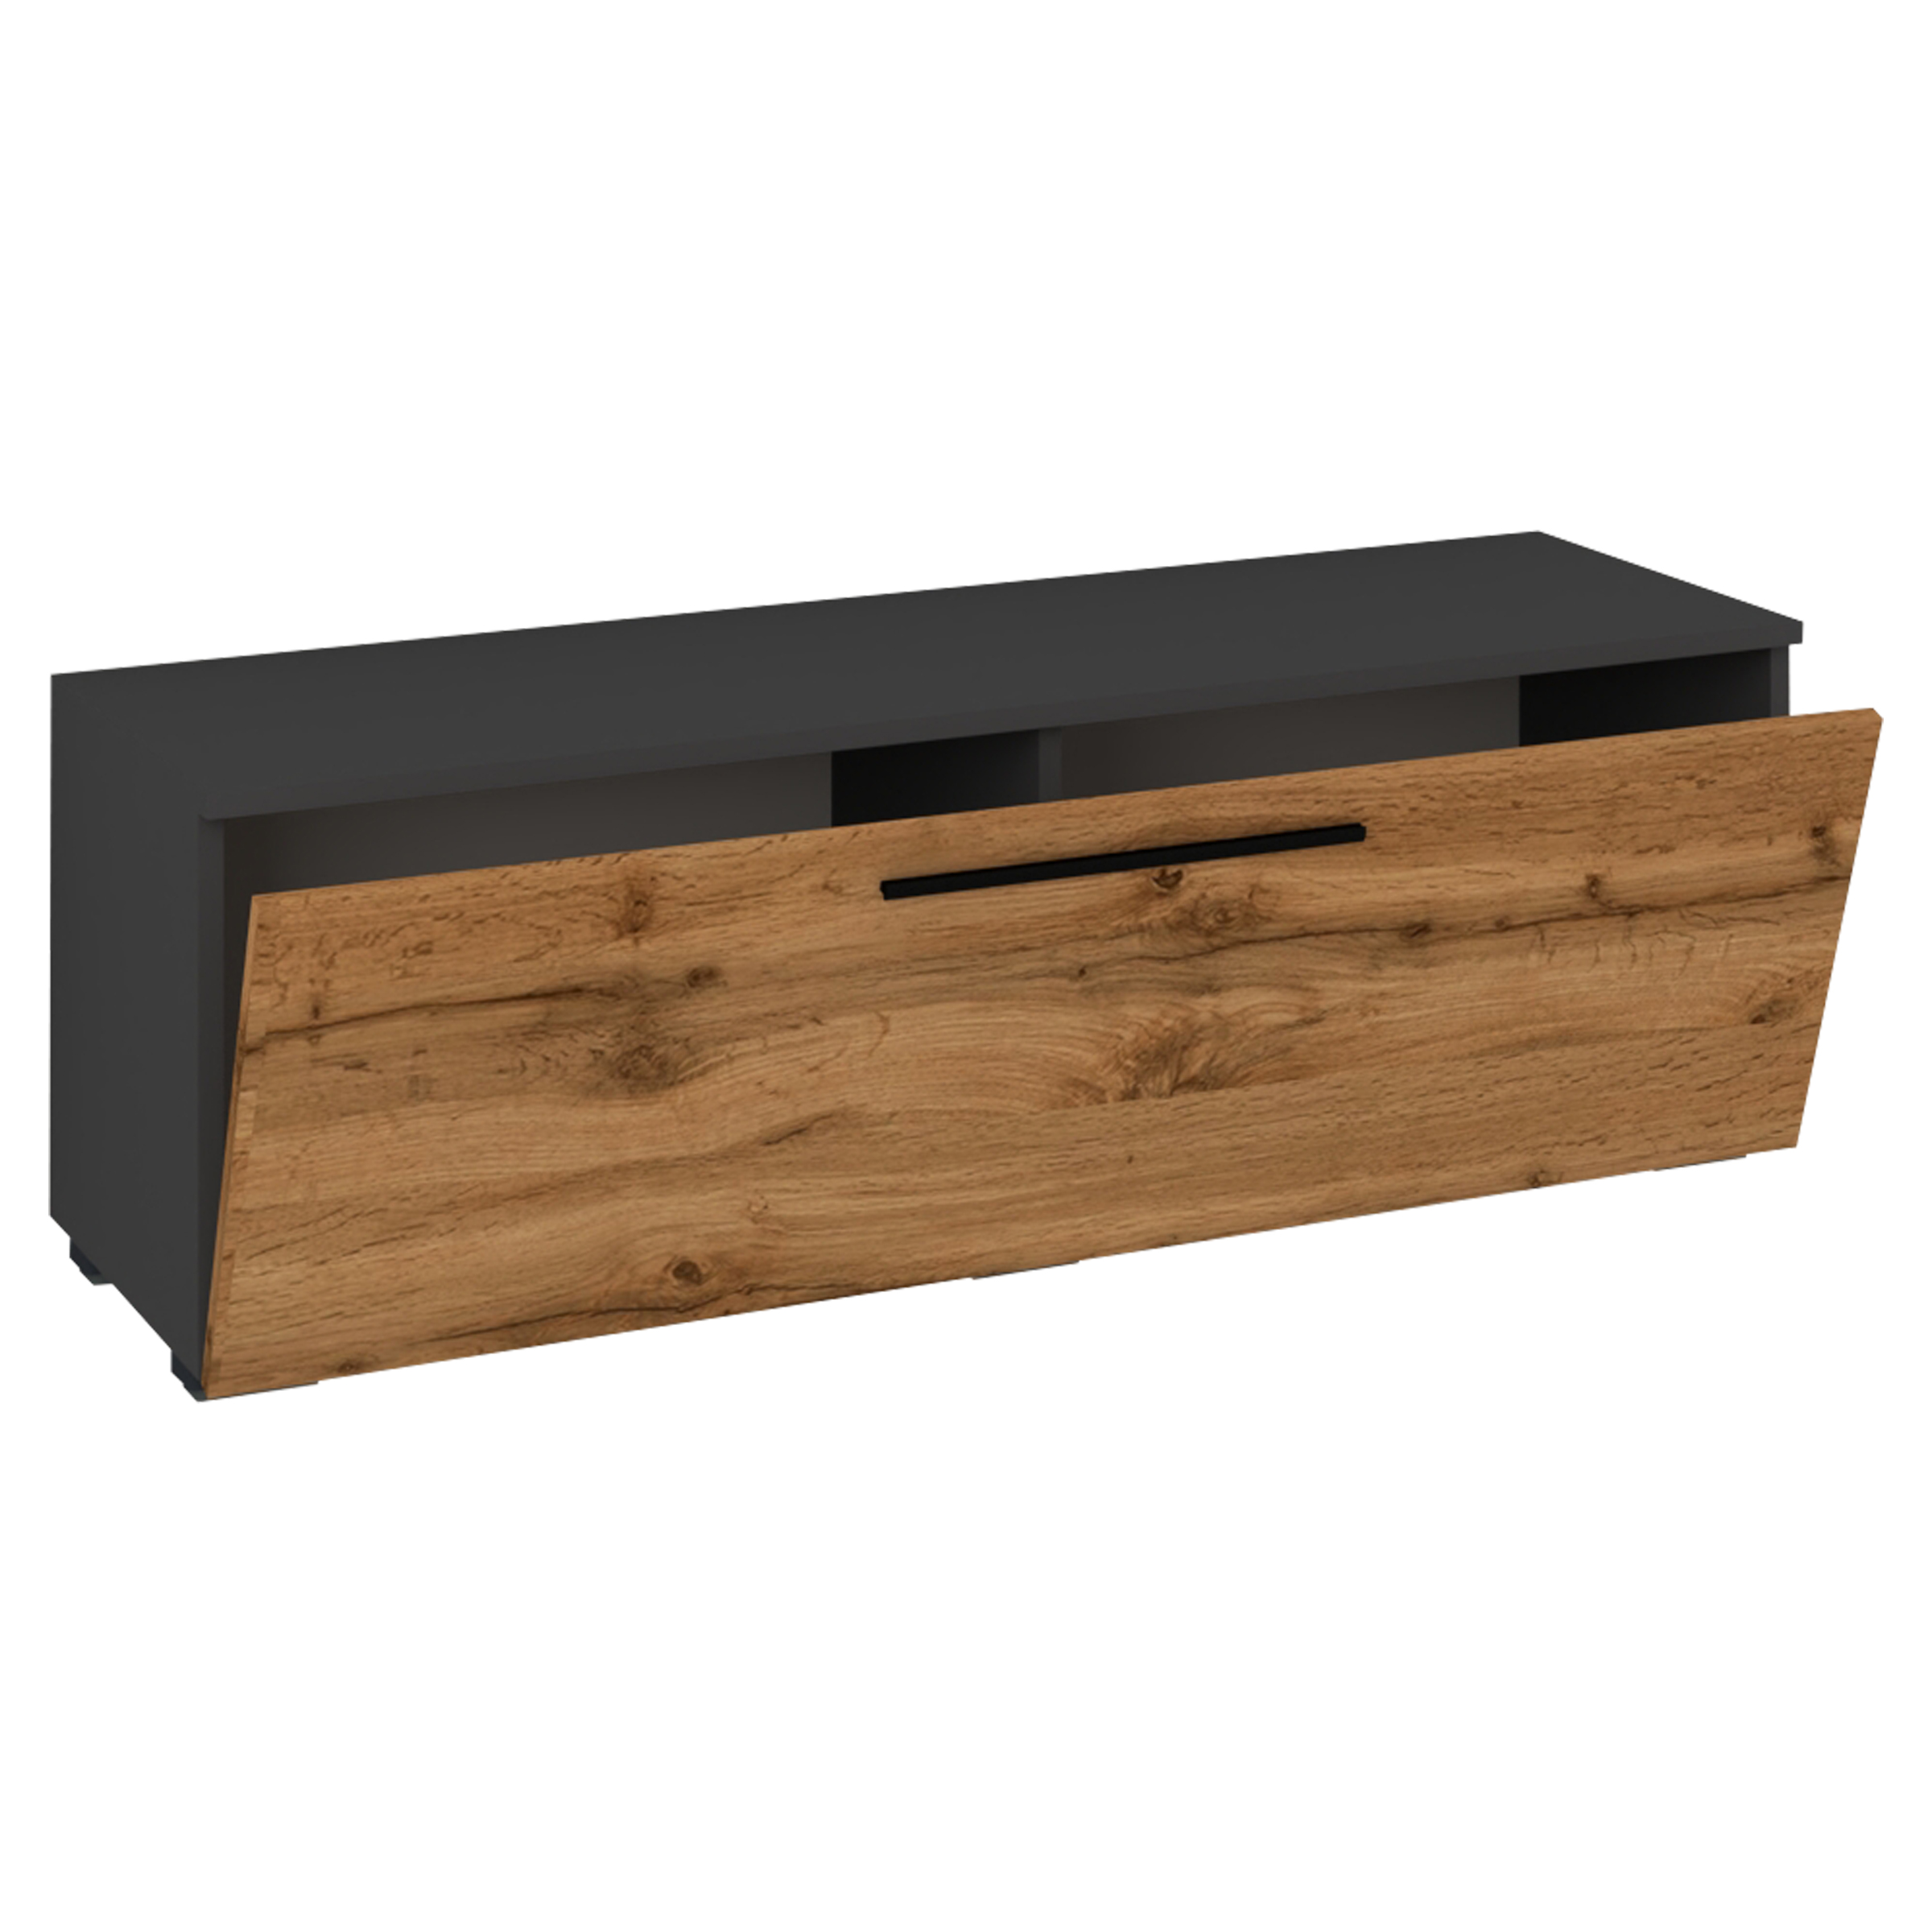 VCM NORDIC Arila M TV-bord, w. 1 dörr och 2 fack - antracitgrå och naturligt trä